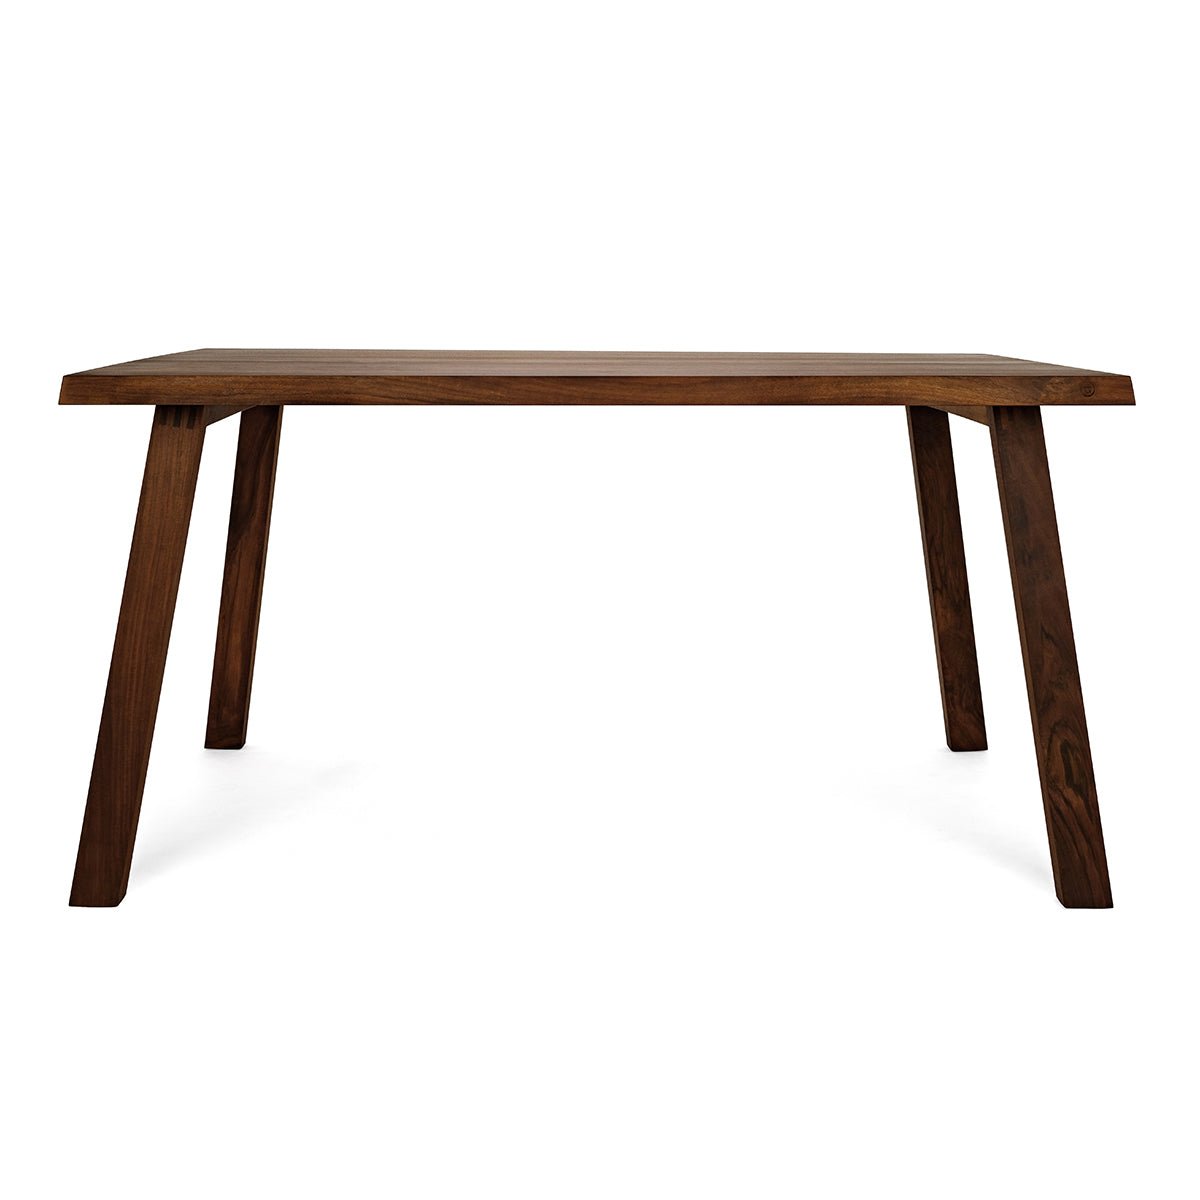 Elegant table “Fritz” made of walnut wood